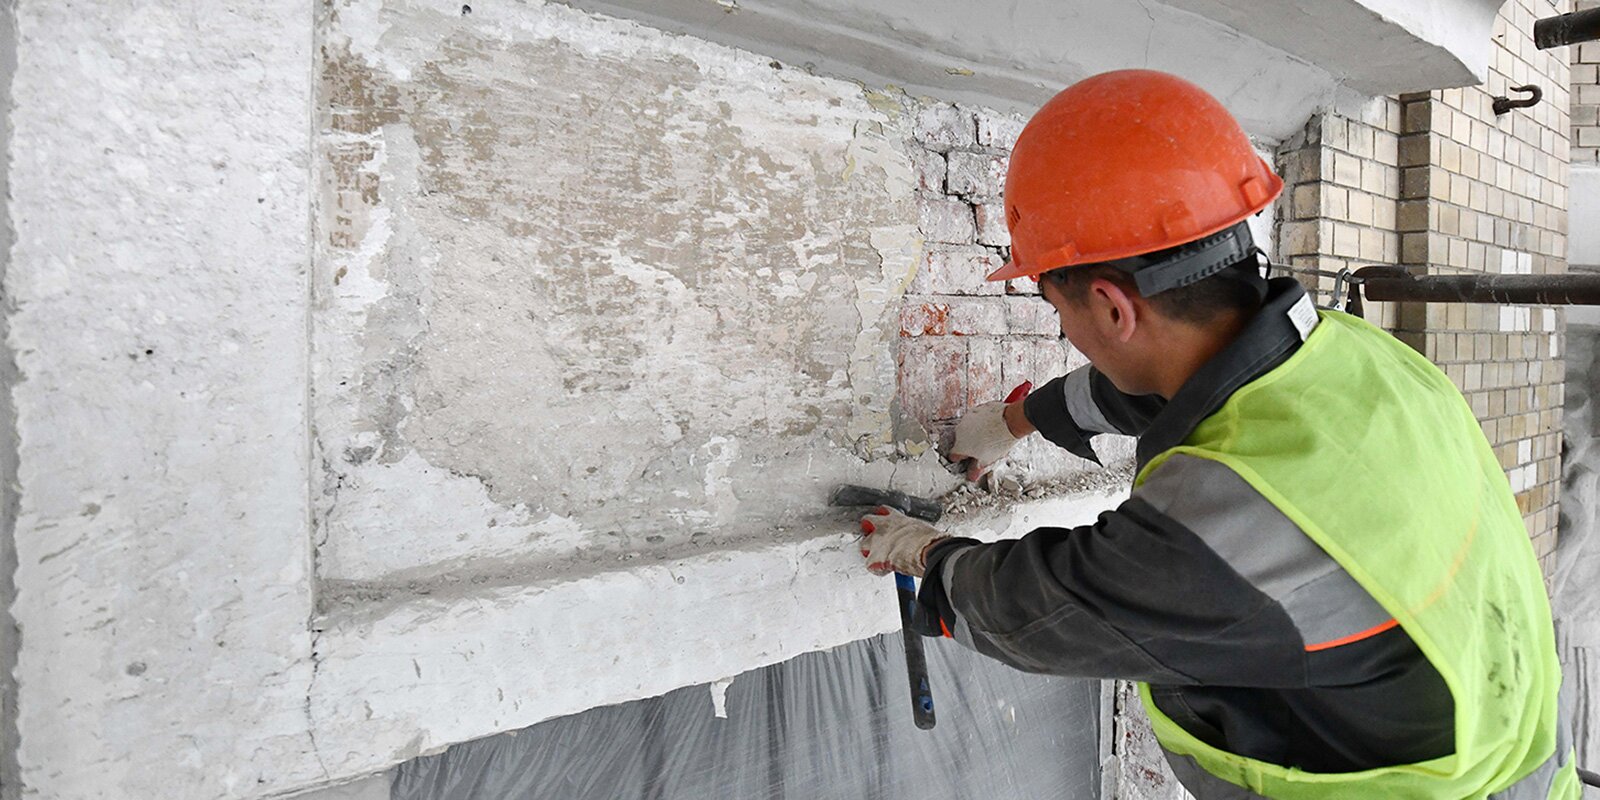 Капитальный ремонт многоквартирного дома реализуют в Таганском районе. Фото: сайт мэра Москвы